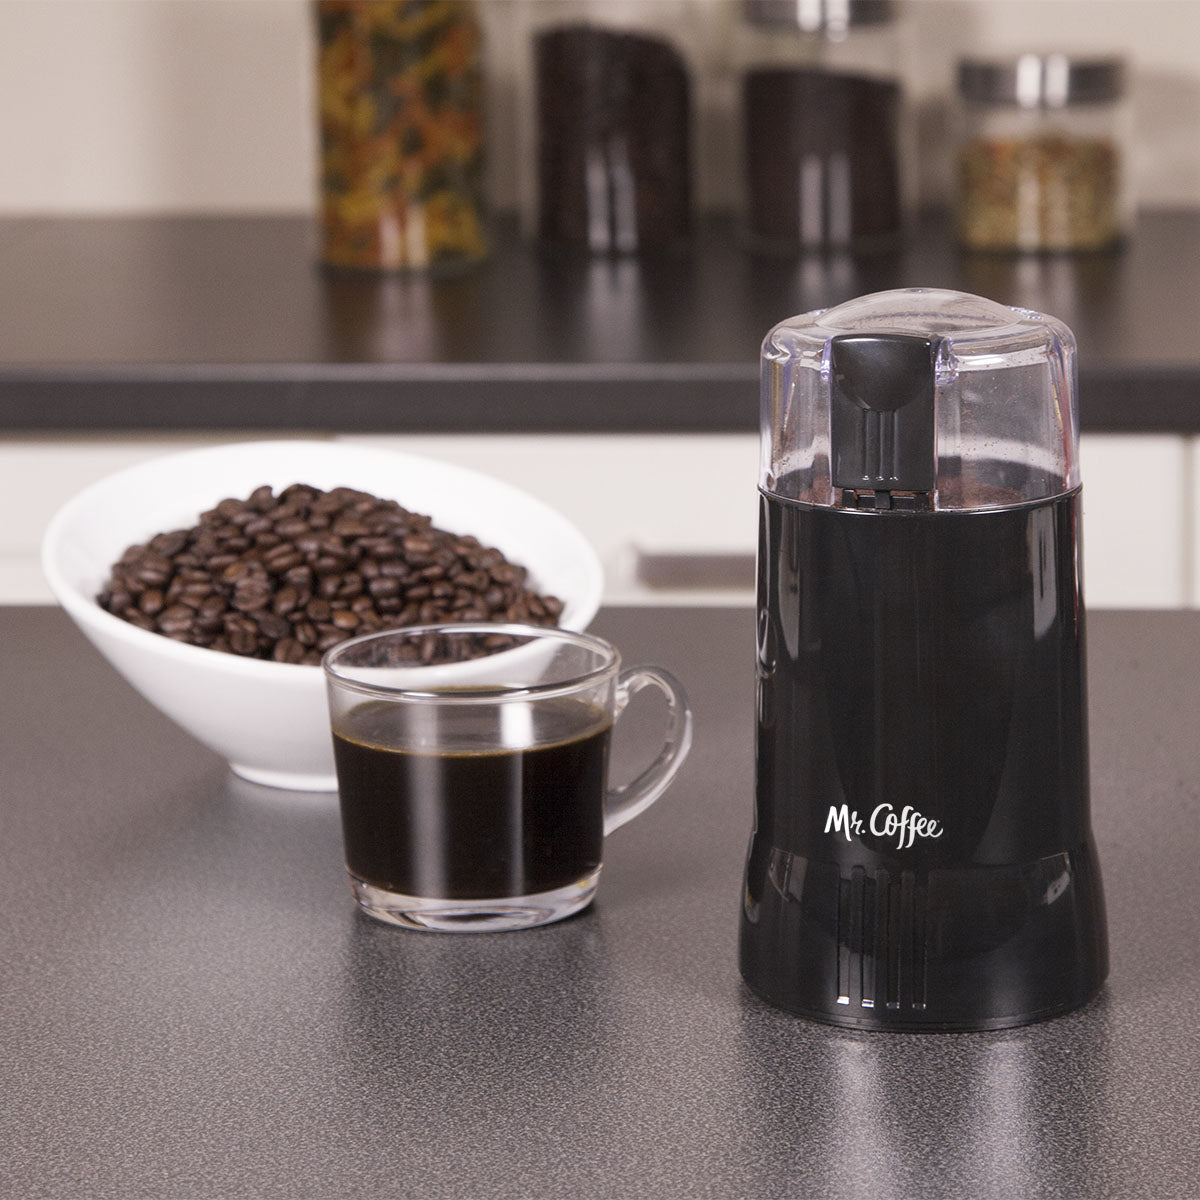 mr. coffee electric coffee grinder|coffee bean grinder| spice grinder, black